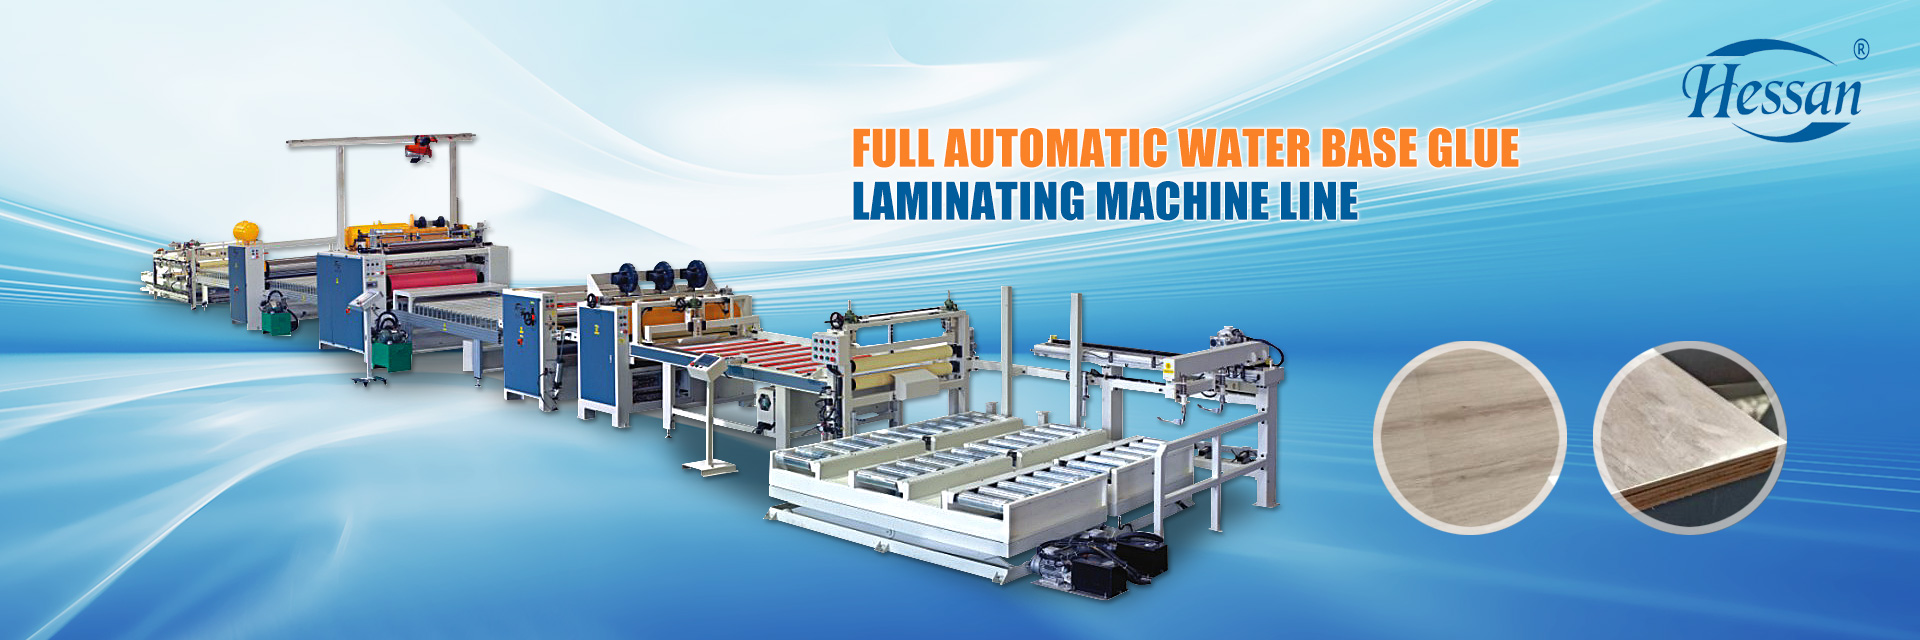 Vollautomatische Flachlaminiermaschine für Klebstoff auf Wasserbasis